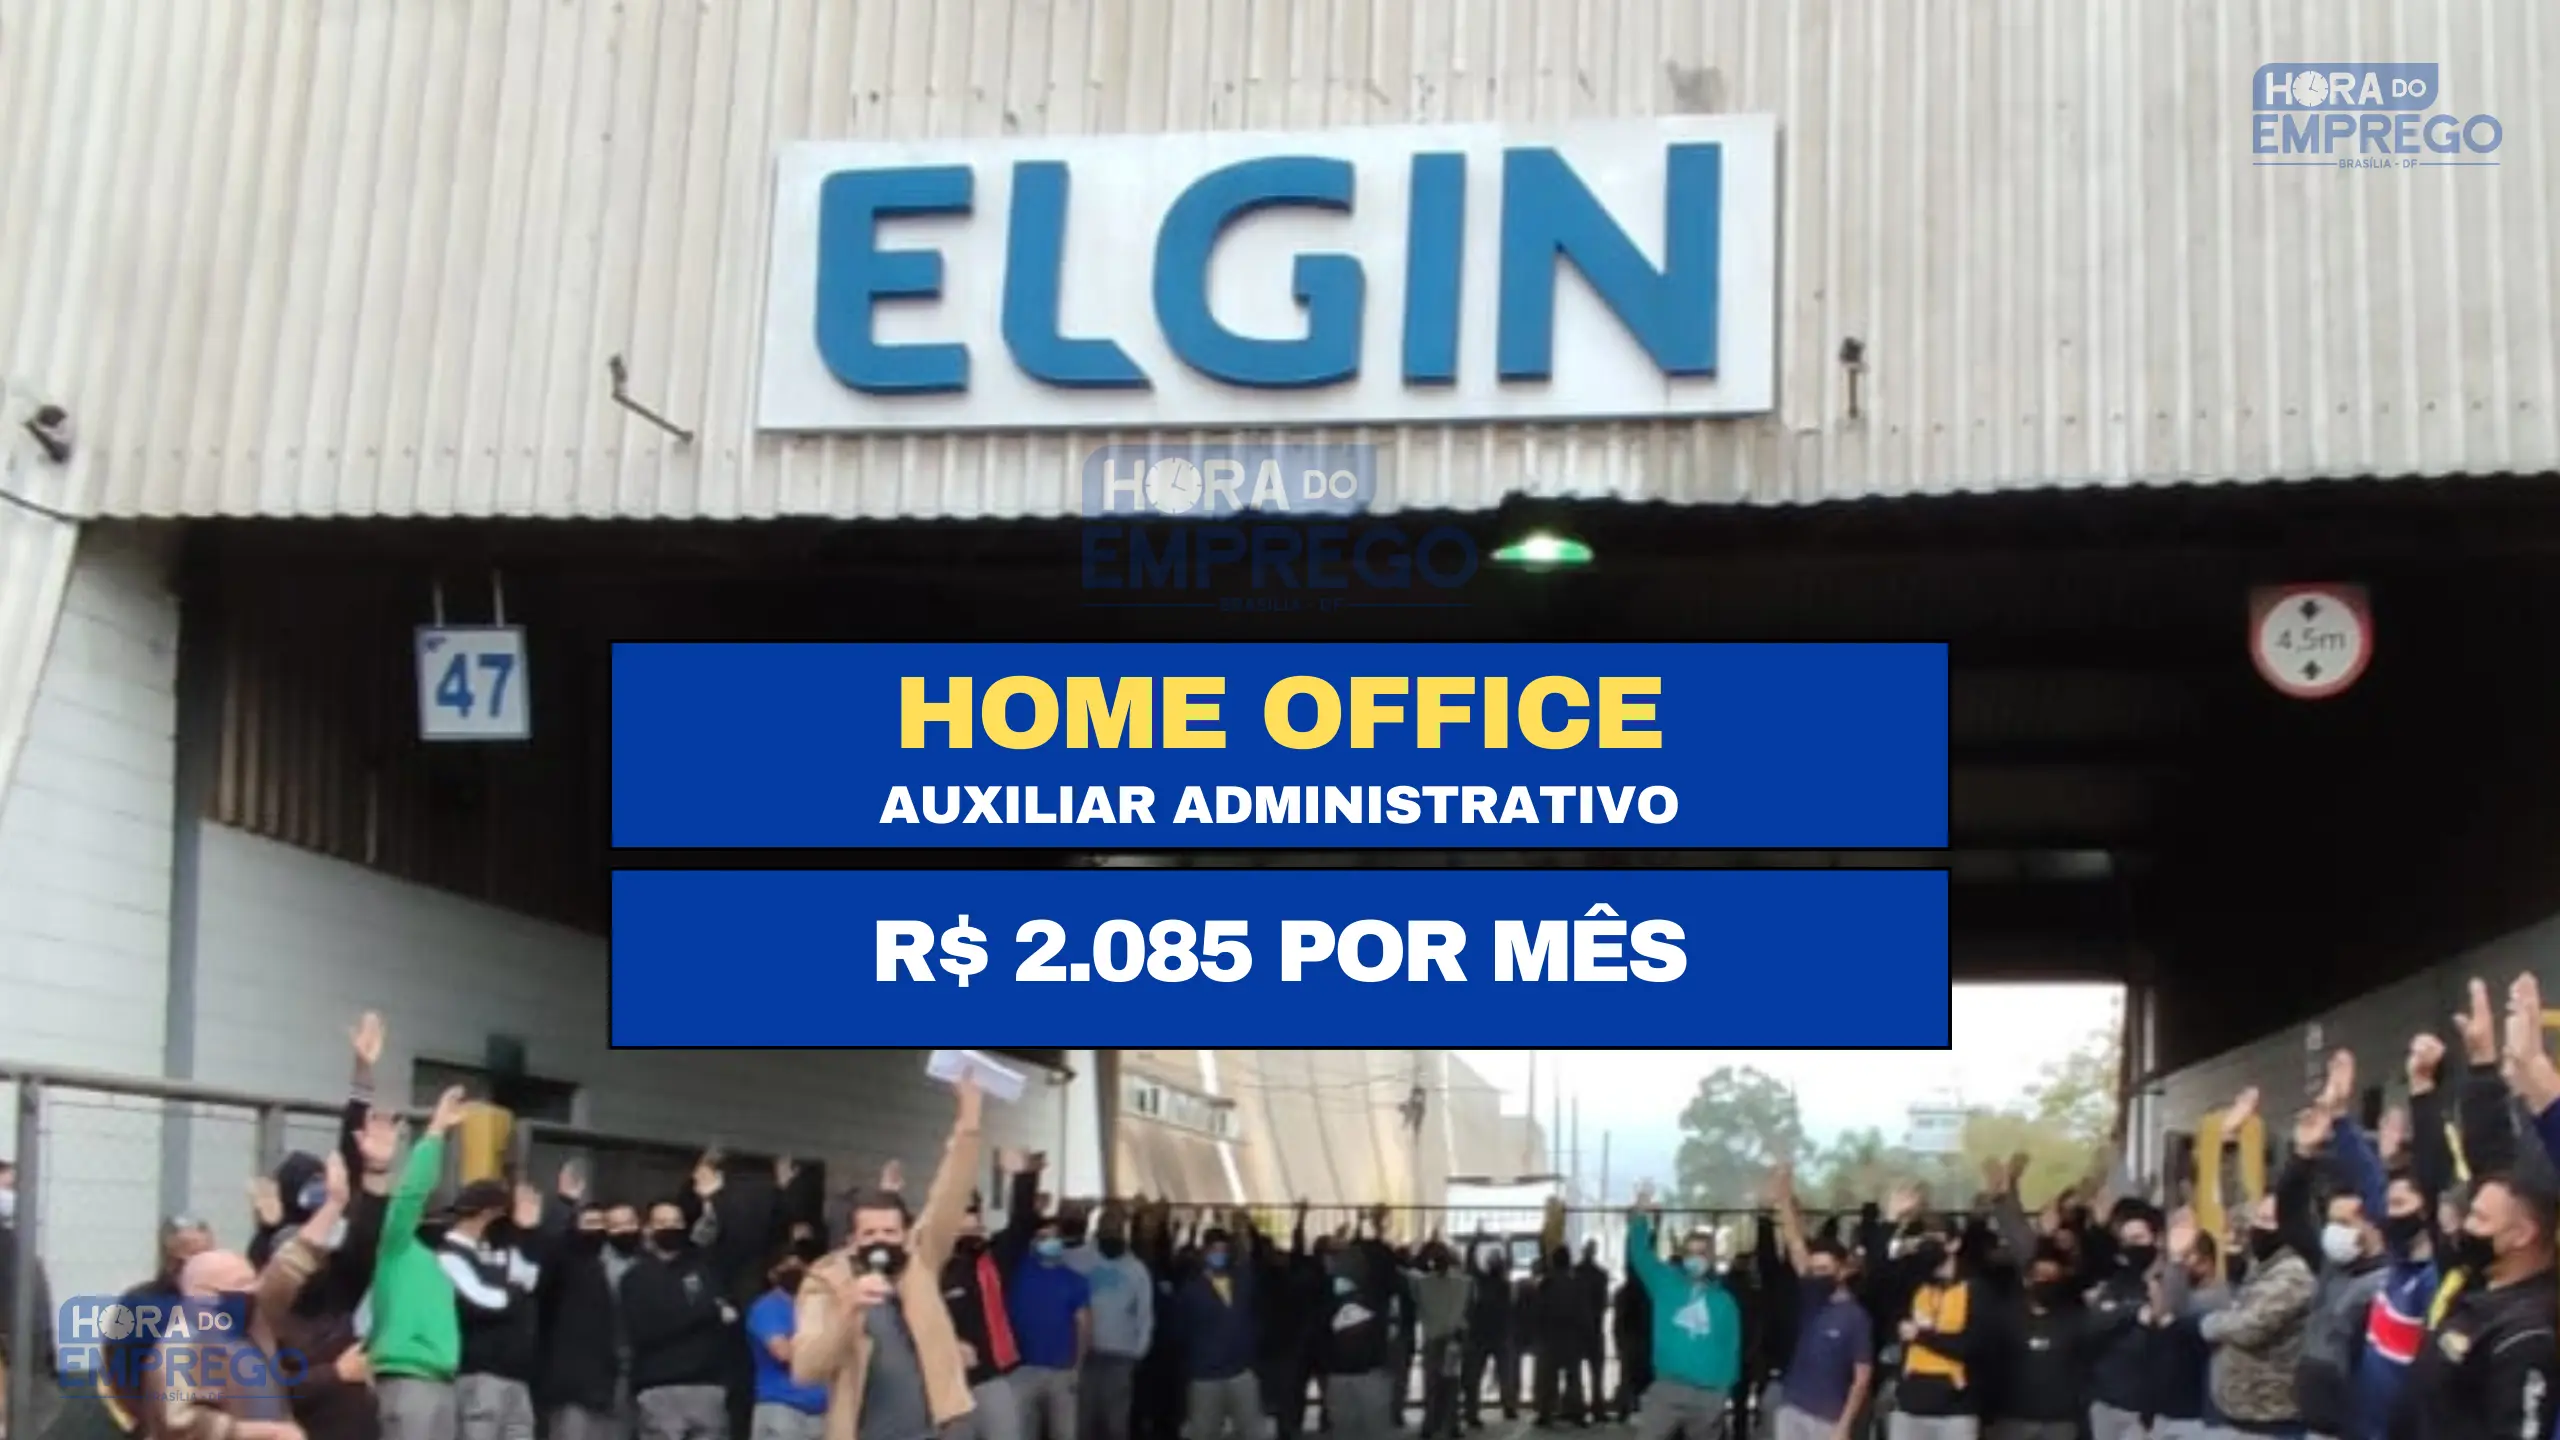 Trabalhe Diretamente de Casa: Elgin S/A abre vagas HOME OFFICE SEM EXPERIÊNCIA para Auxiliar Administrativo com salário de R$ 2.085 por mês